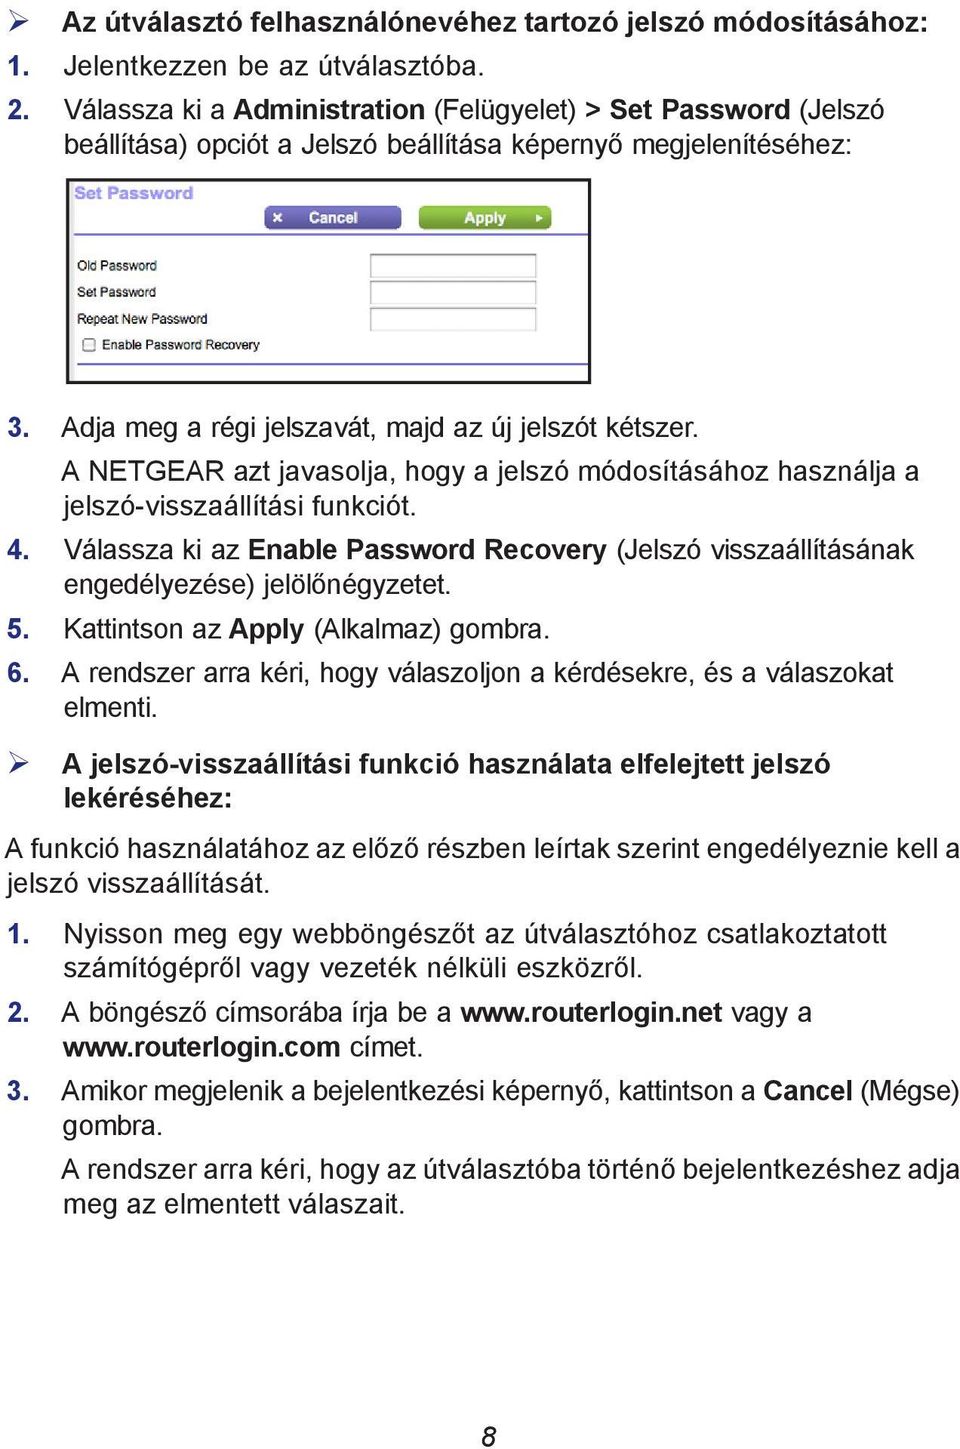 A NETGEAR azt javasolja, hogy a jelszó módosításához használja a jelszó-visszaállítási funkciót. 4. Válassza ki az Enable Password Recovery (Jelszó visszaállításának engedélyezése) jelölőnégyzetet. 5.